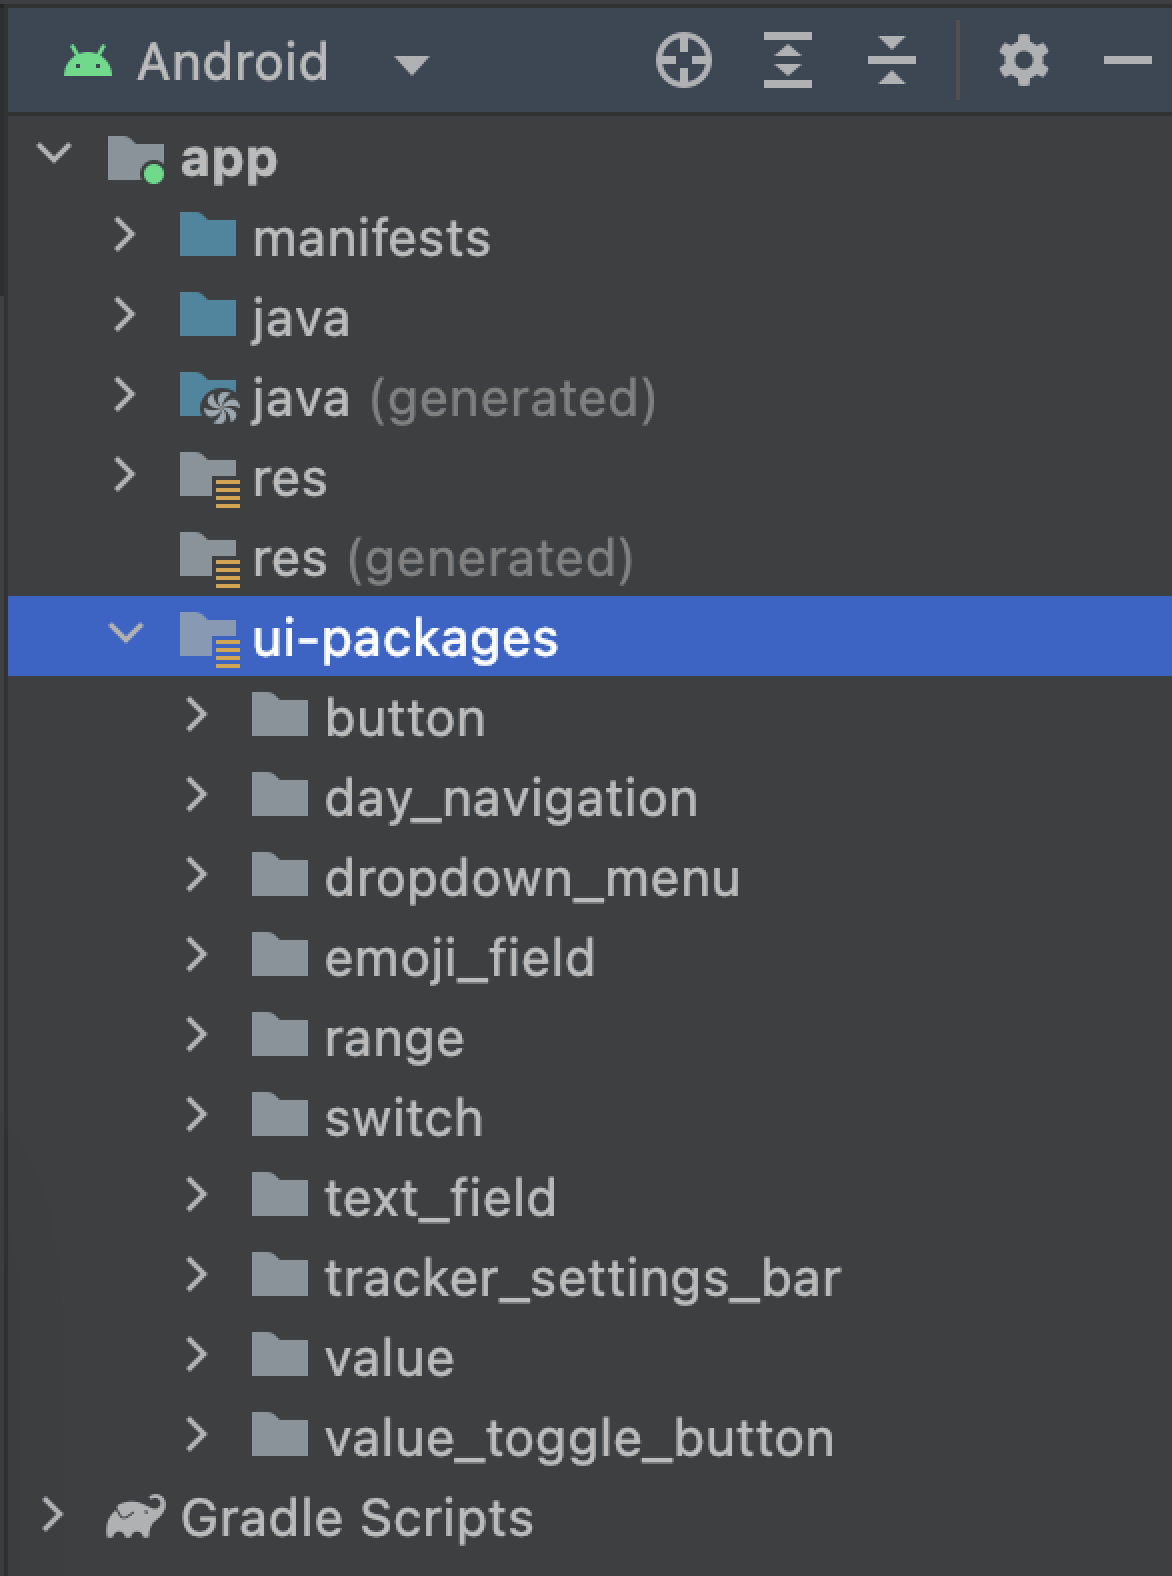 ui-packages 資料夾